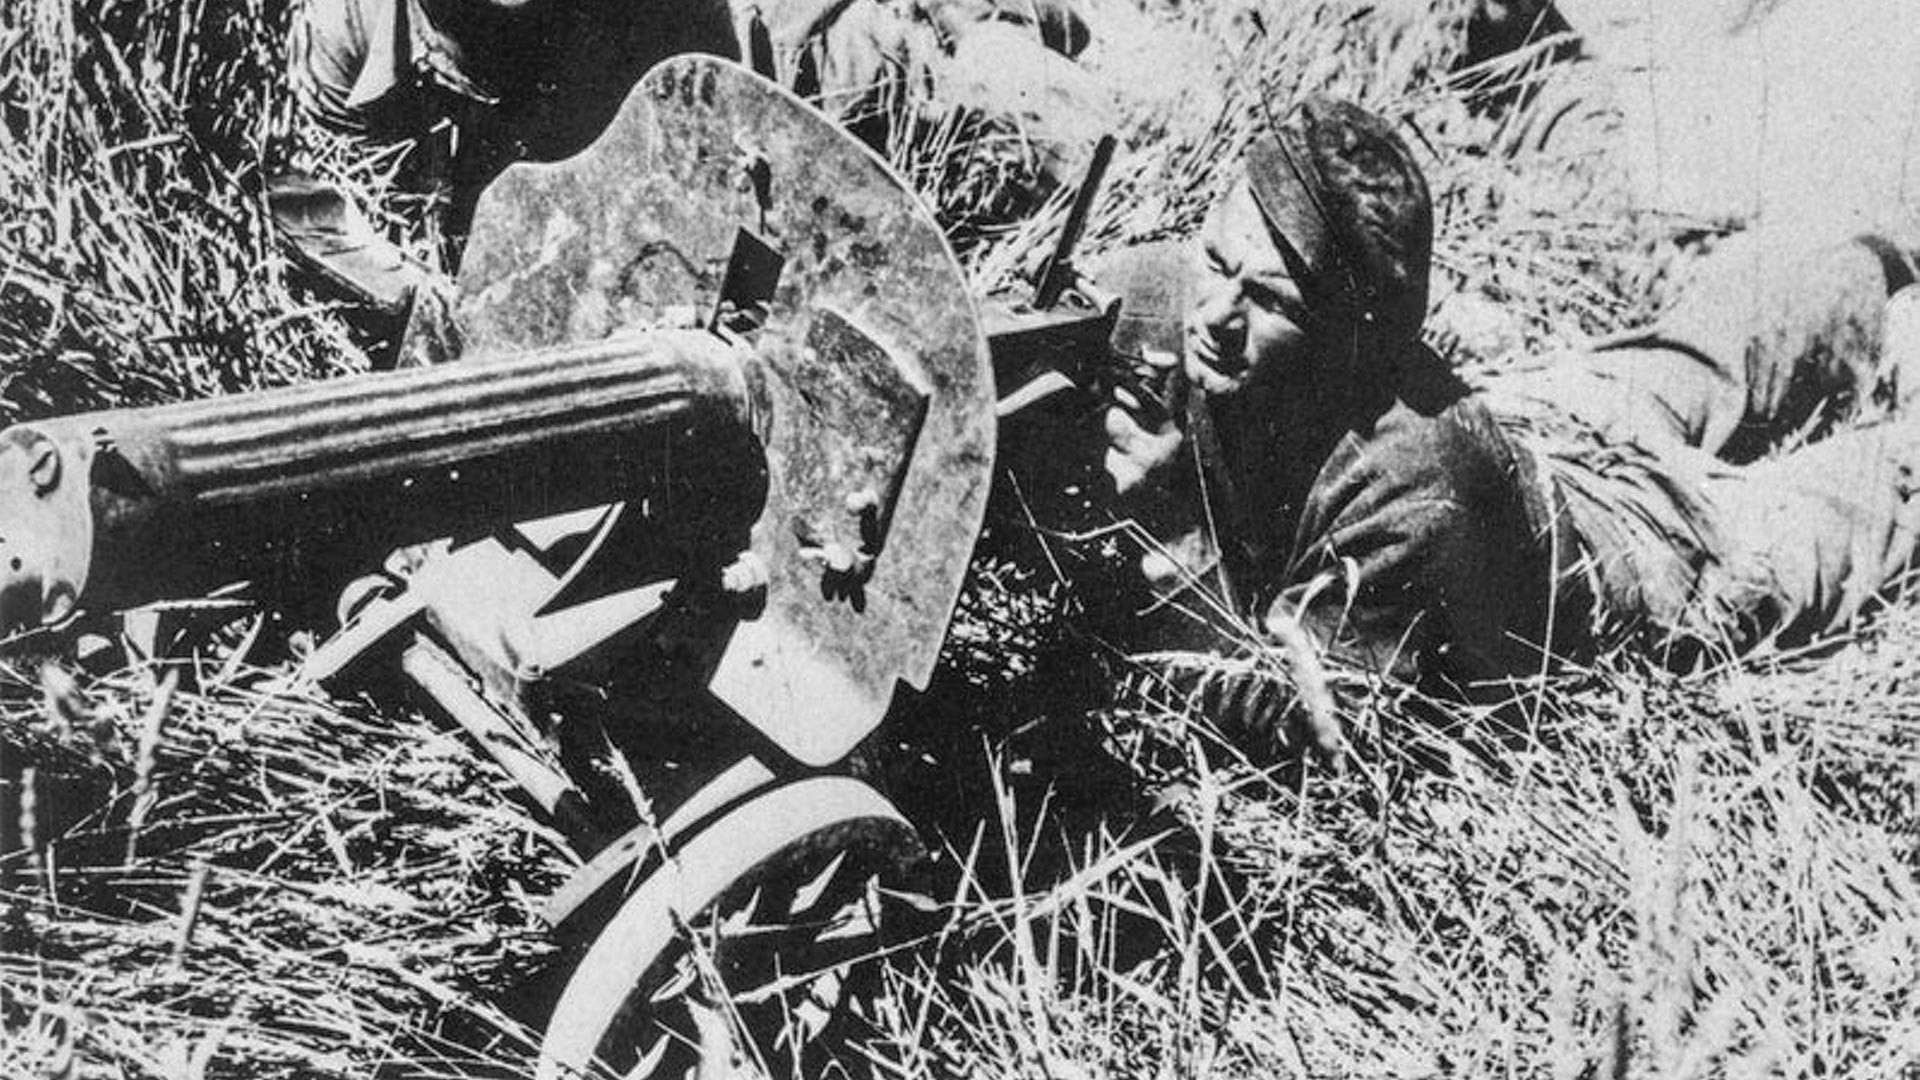 Soldat de la brigade internationale avec une mitrailleuse soviétique, pendant la guerre civile espagnole